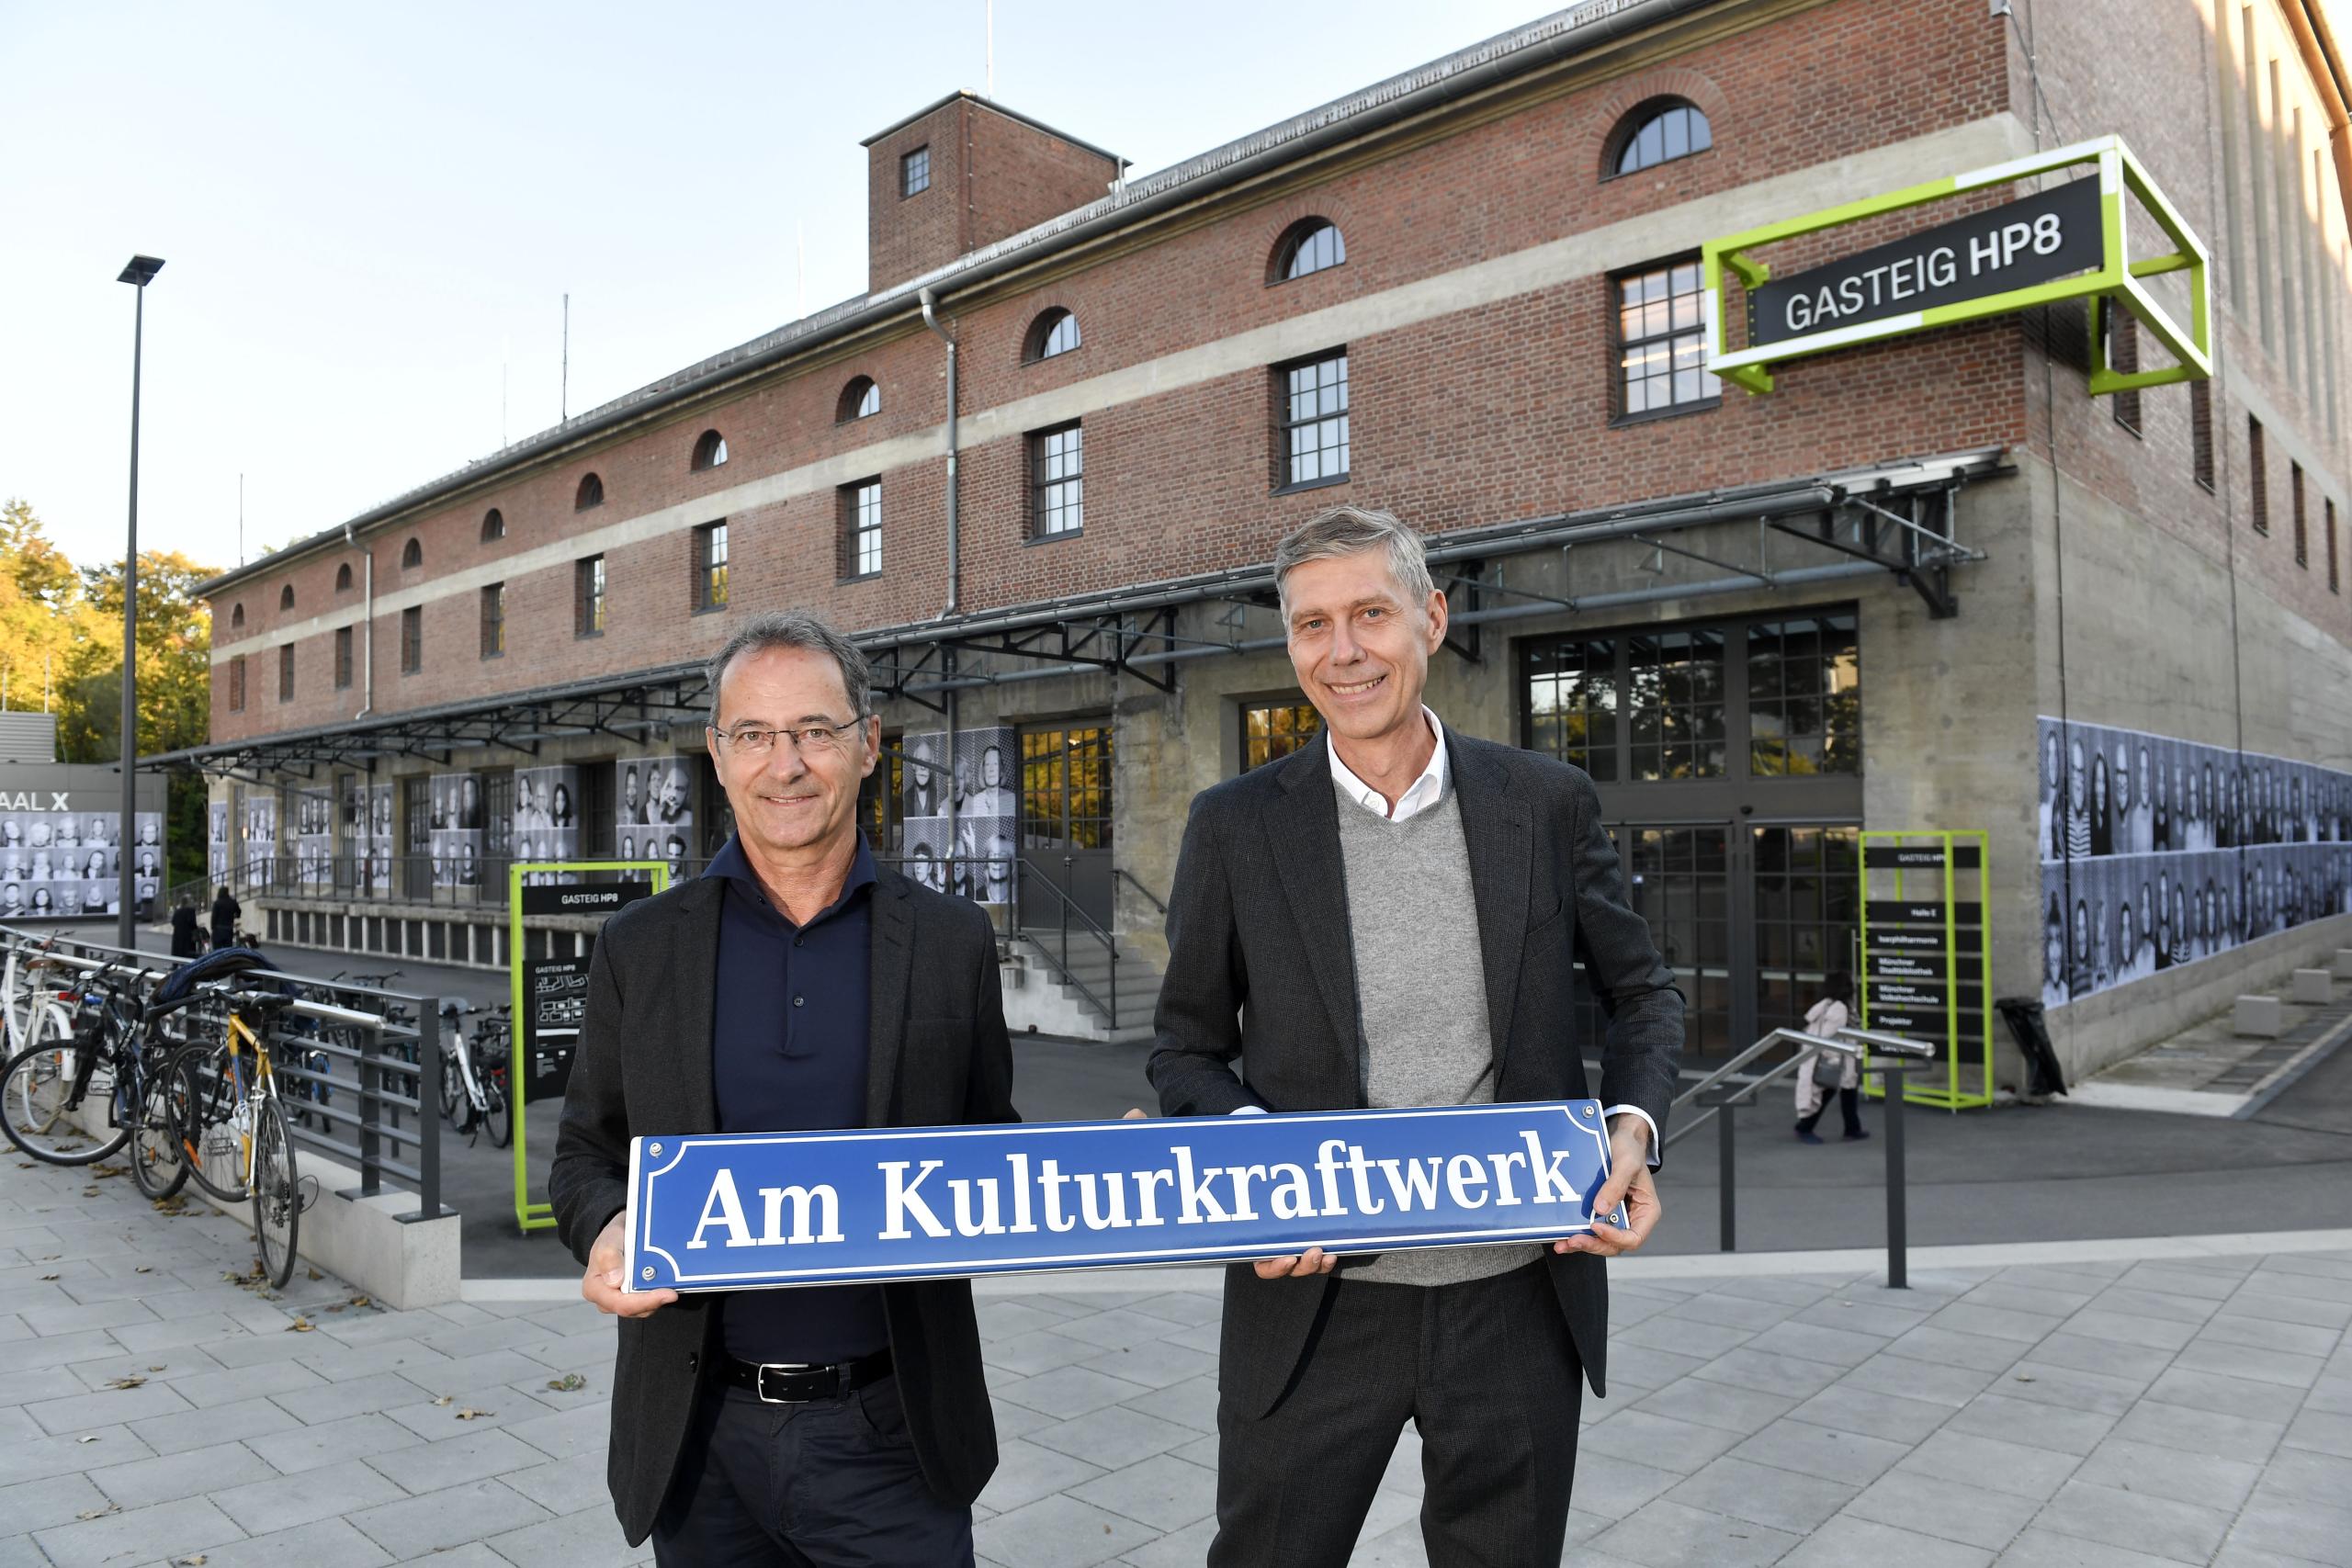 Werner Albrecht und Max Wagner mit dem Schild "Am Kulturkraftwerk"